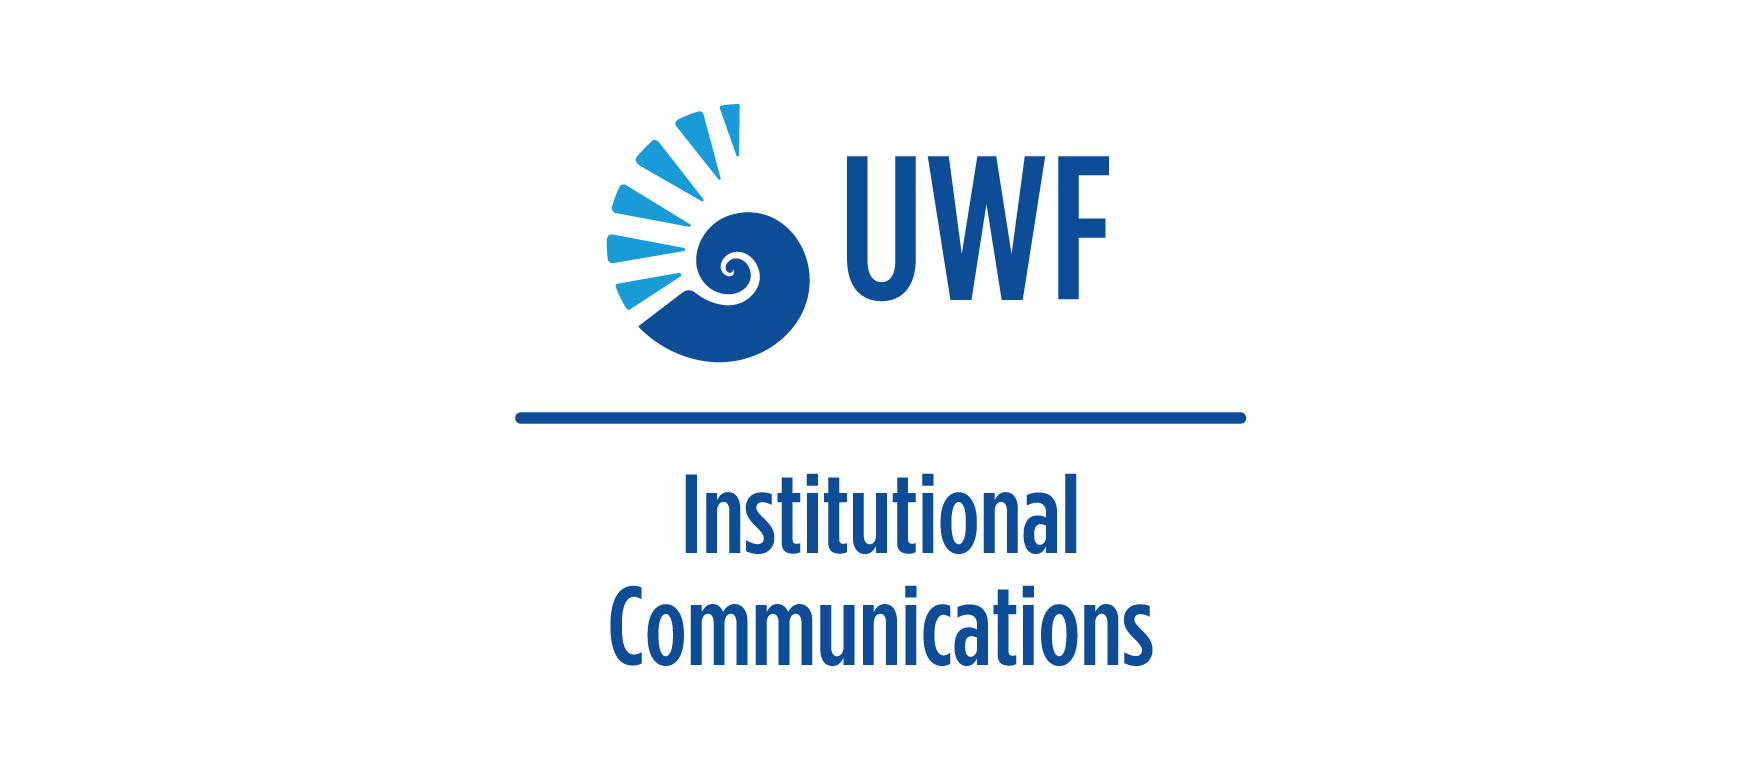 UWF Logo - Logo Signature System | University of West Florida